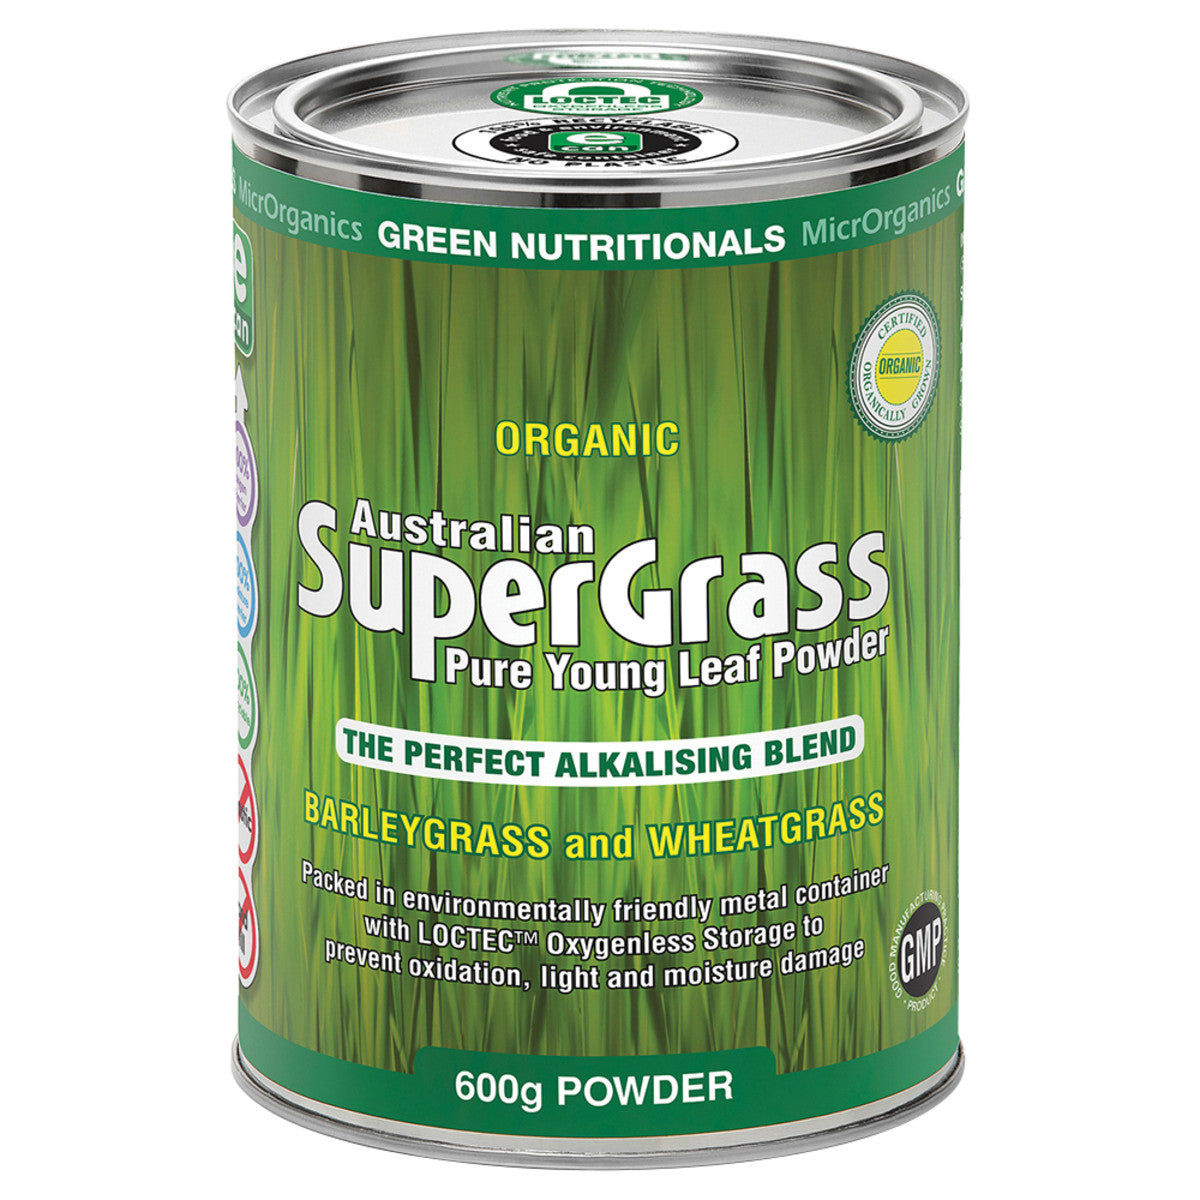 Green Nutritionals - Organic Australian SuperGrass